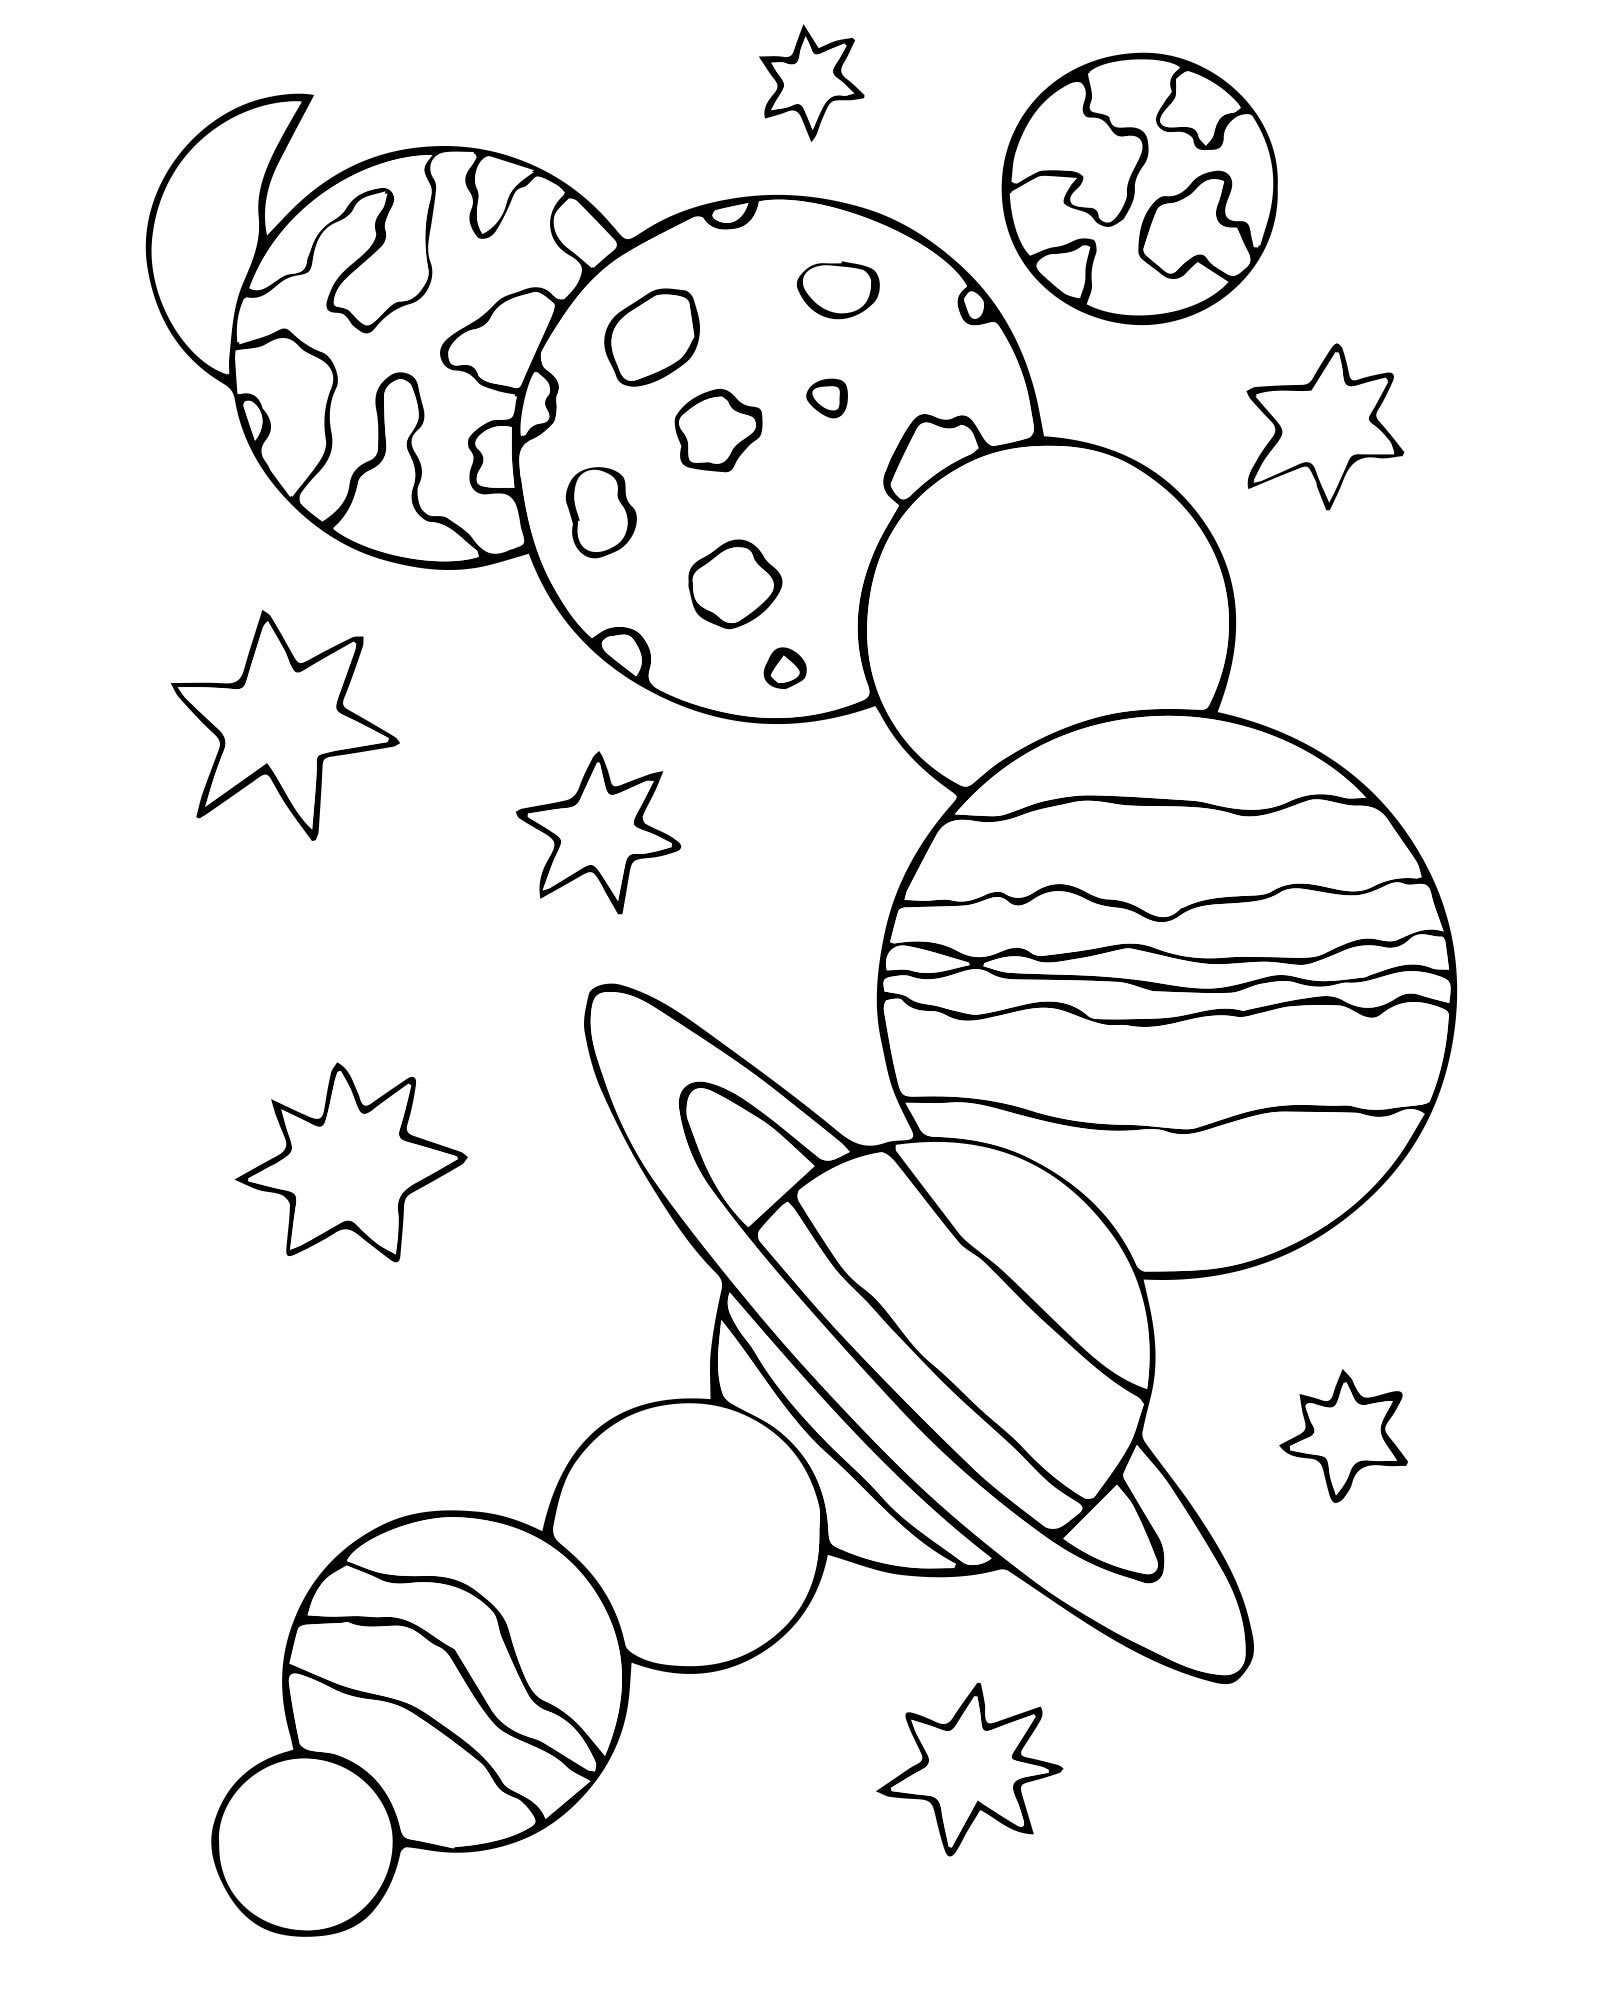 Раскраска космос 3 4 года. Космос раскраска для детей. Раскраска. В космосе. Раскраска космос и планеты для детей. Раскраски космос для детей 4-5 лет.